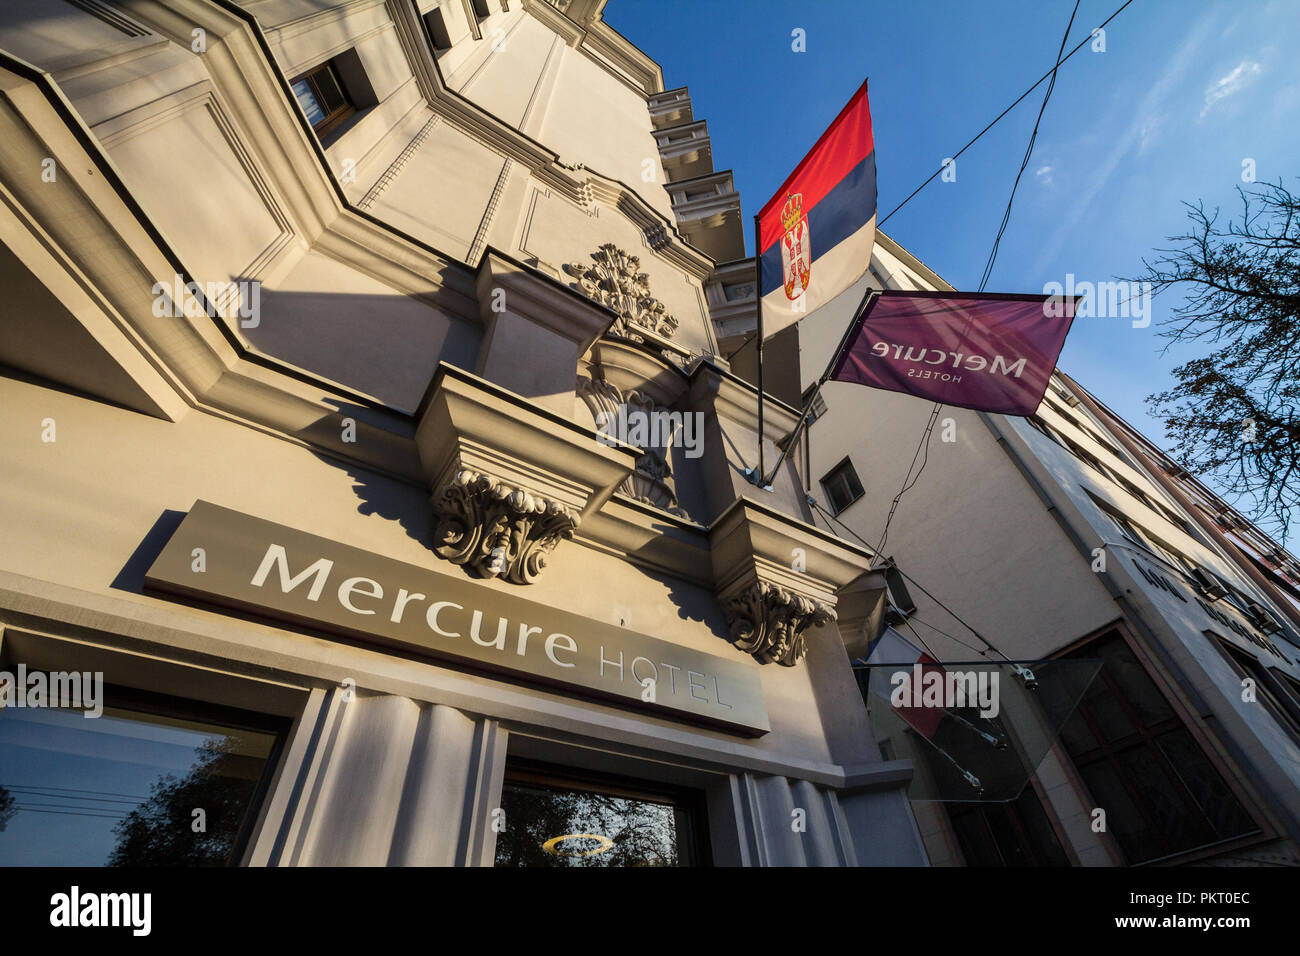 Belgrado, Serbia - Septiembre 12, 2018: Mercure Hotel insignia en su negocio principal para Serbia. Hoteles Mercure es una cadena hotelera del grupo Accorhotel Foto de stock